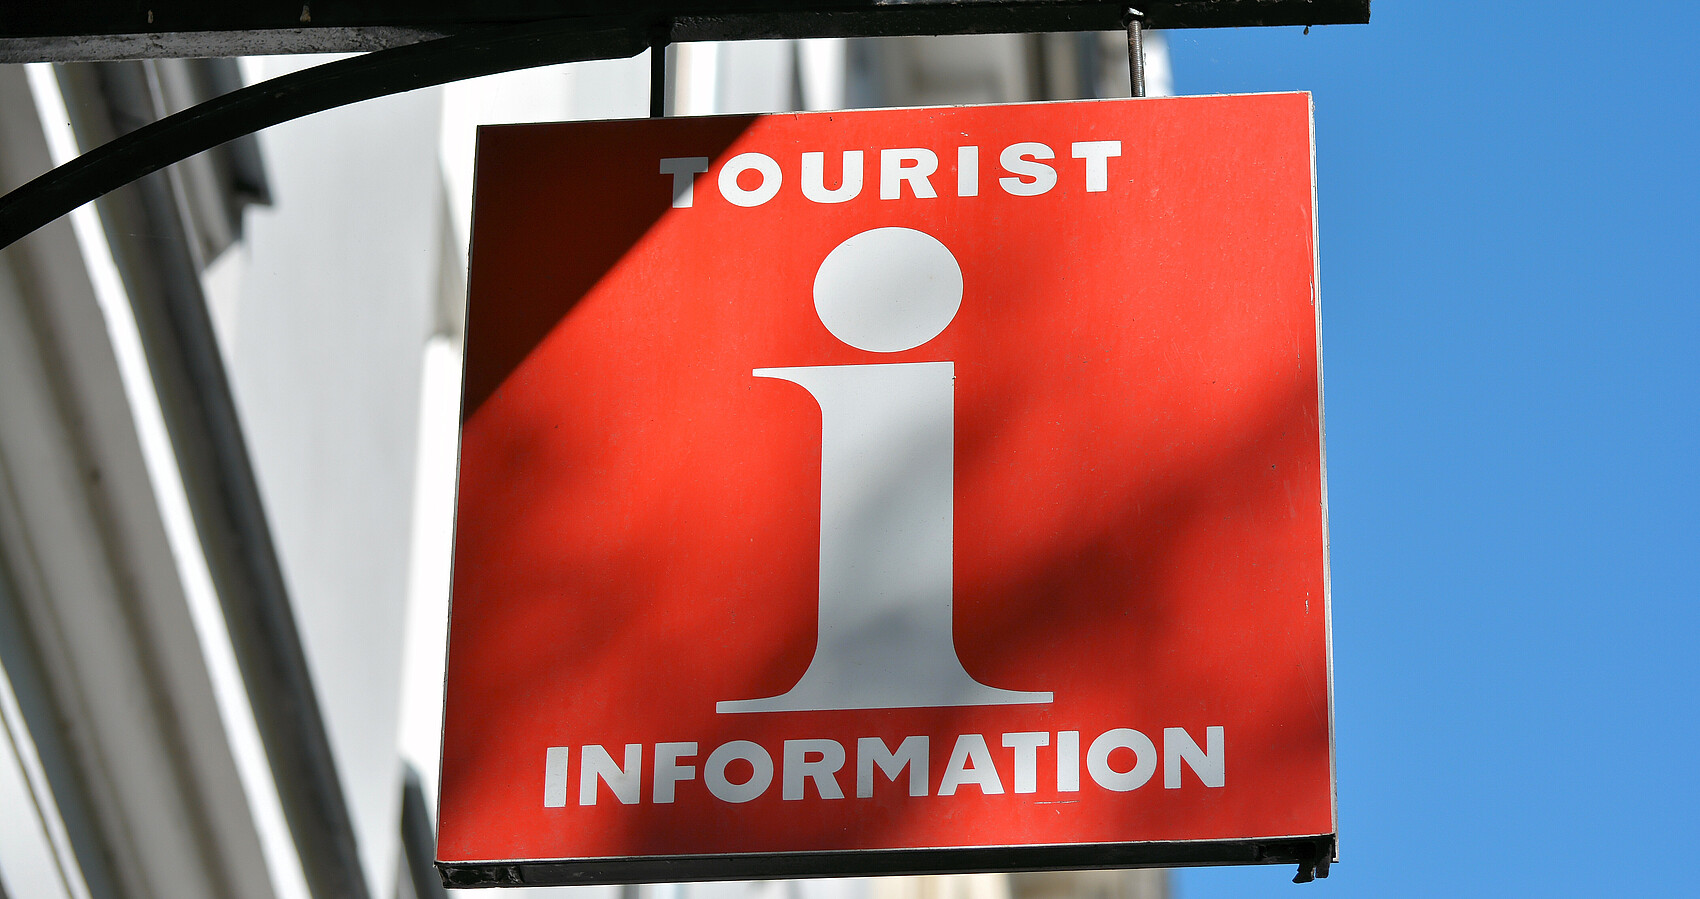 Rotes Schild an Hauswand mit weißem "i" in der Mitte oben "Tourist" unten "Information"